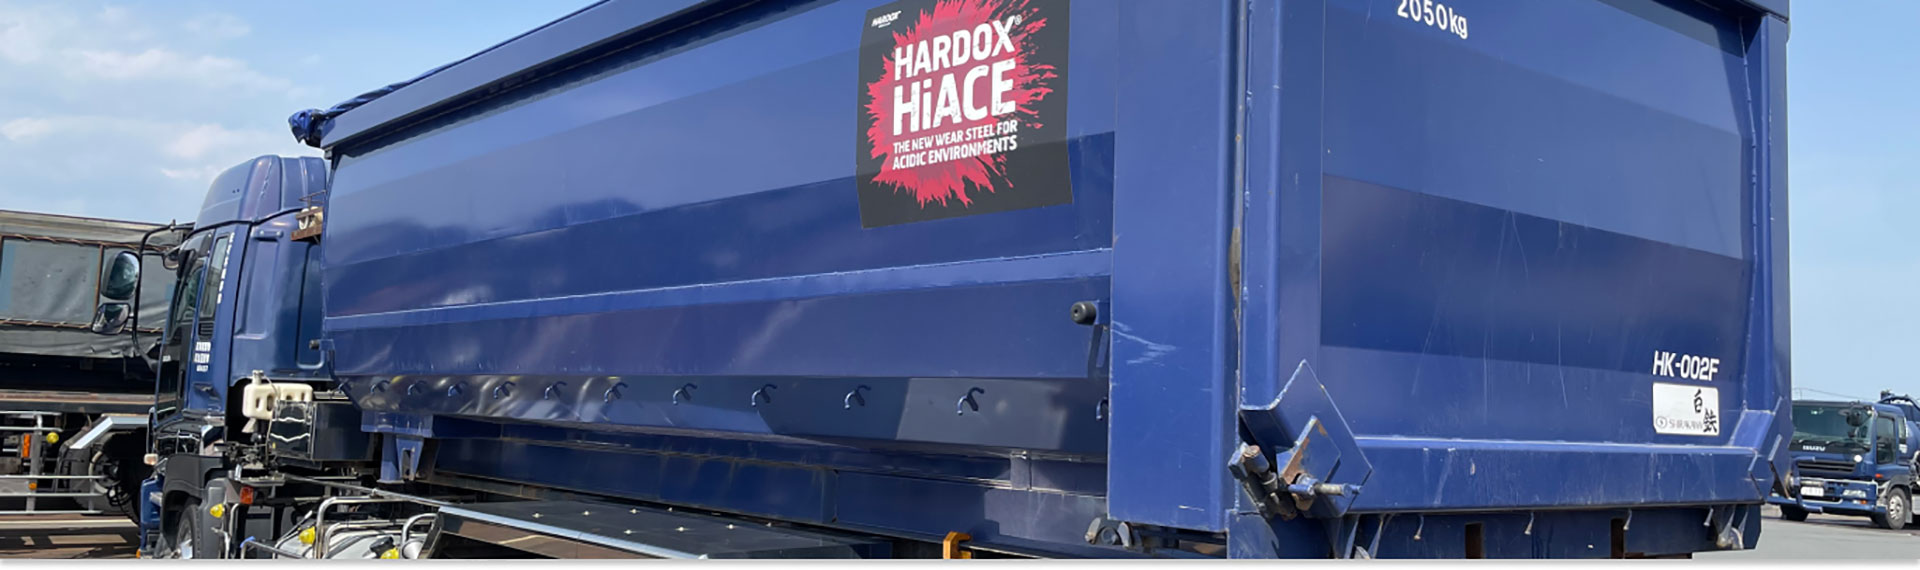 腐食環境向けのHardox® HiAce製ディープブルーのコンテナボディ。